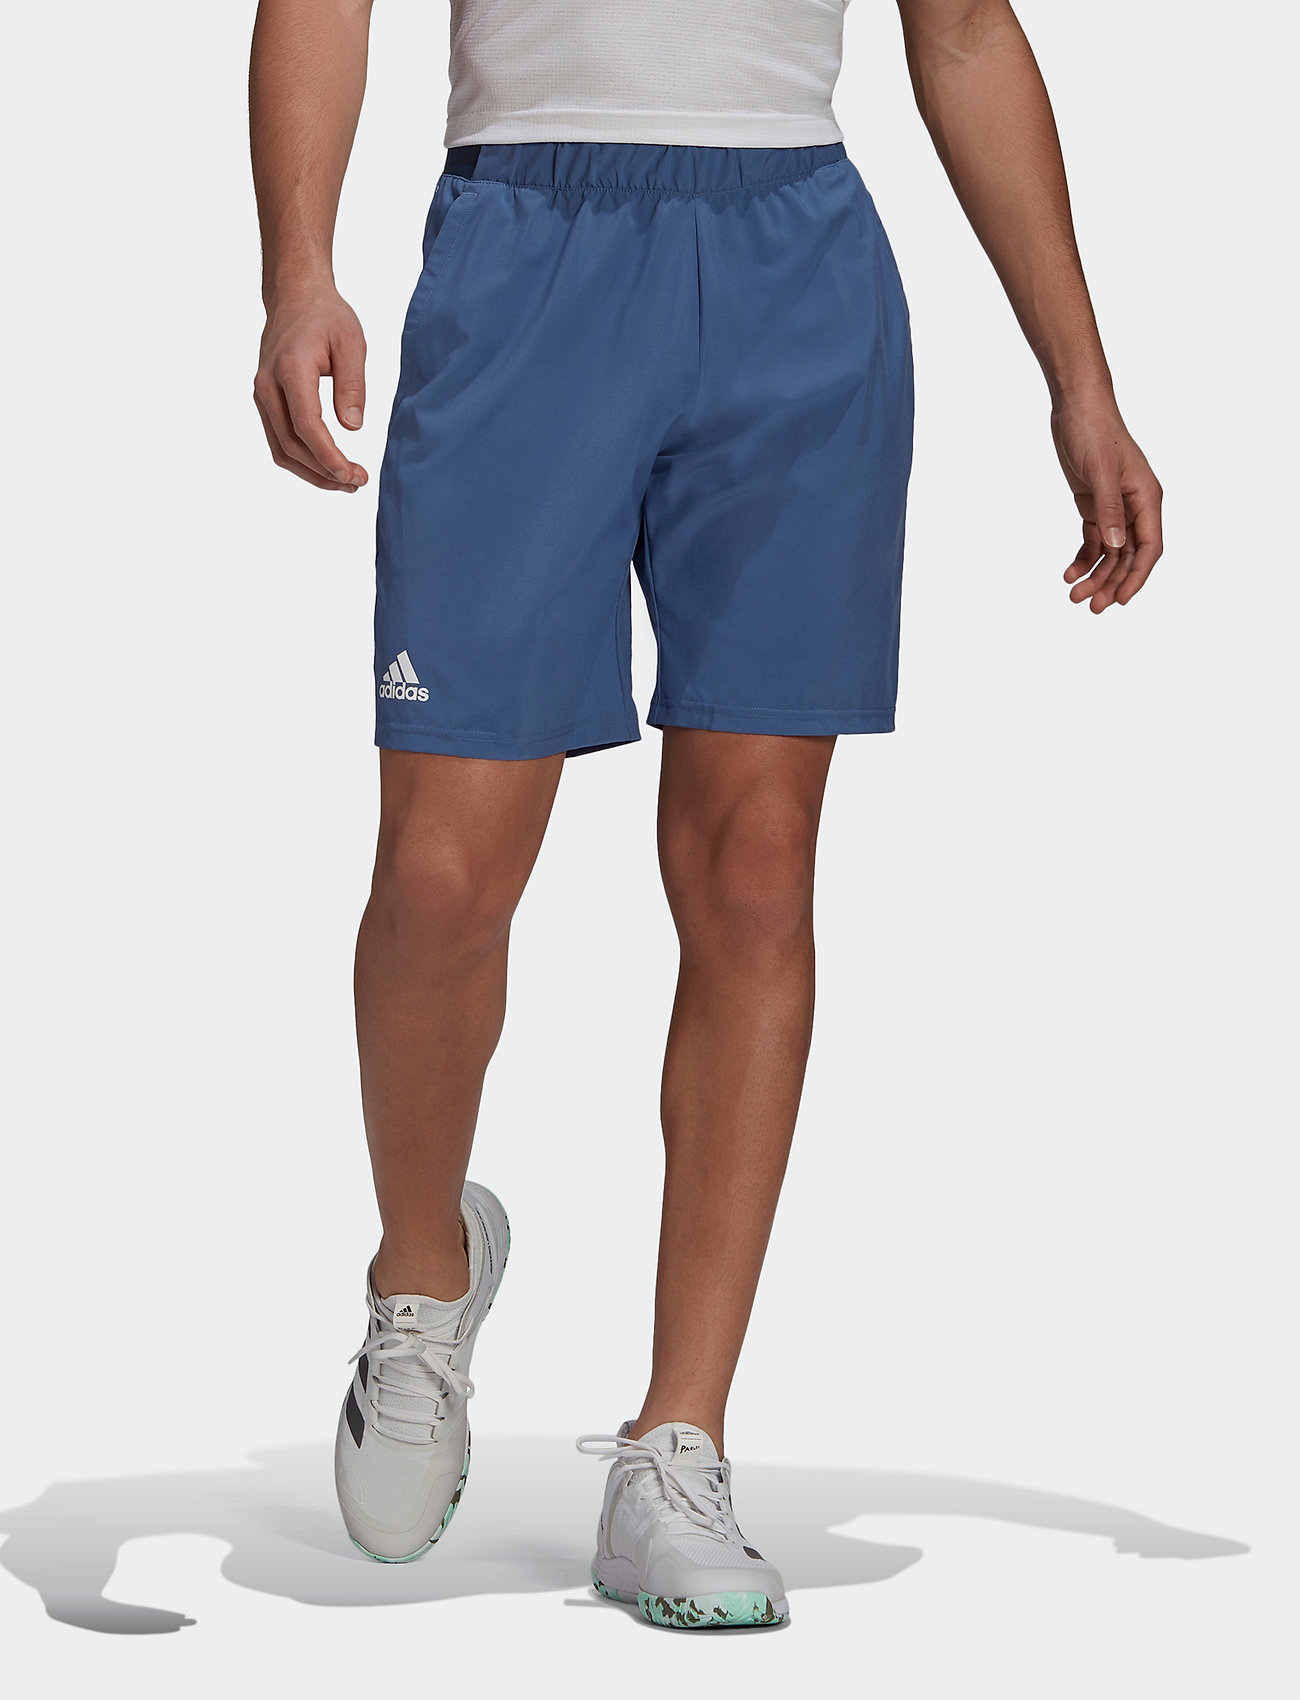 Adidas Club SW short. Мужские шорты адидас Climalite коллекция 2020 года серые.